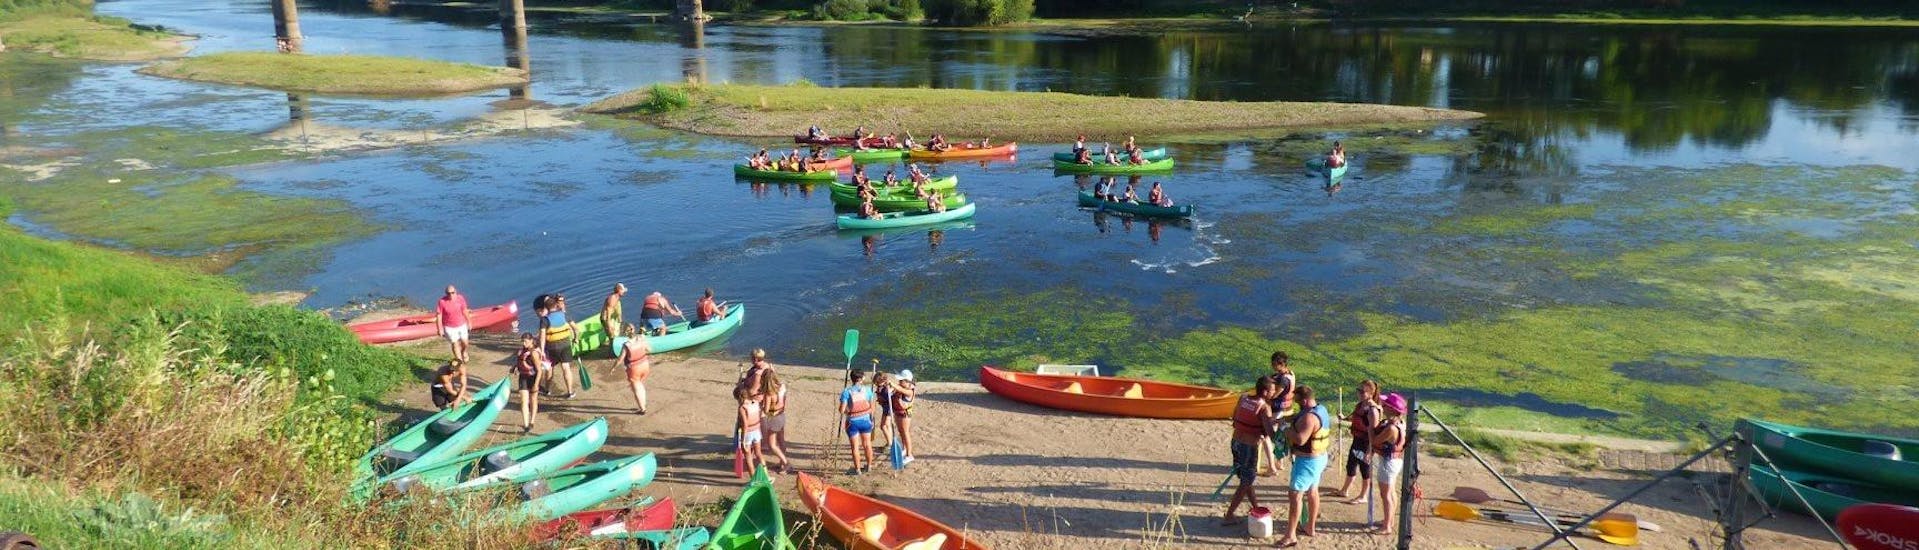 Les vacanciers se mettent à l'eau pour leur sortie en canoë sur la Dordogne avec Canoë Kayak Port-Sainte-Foy.